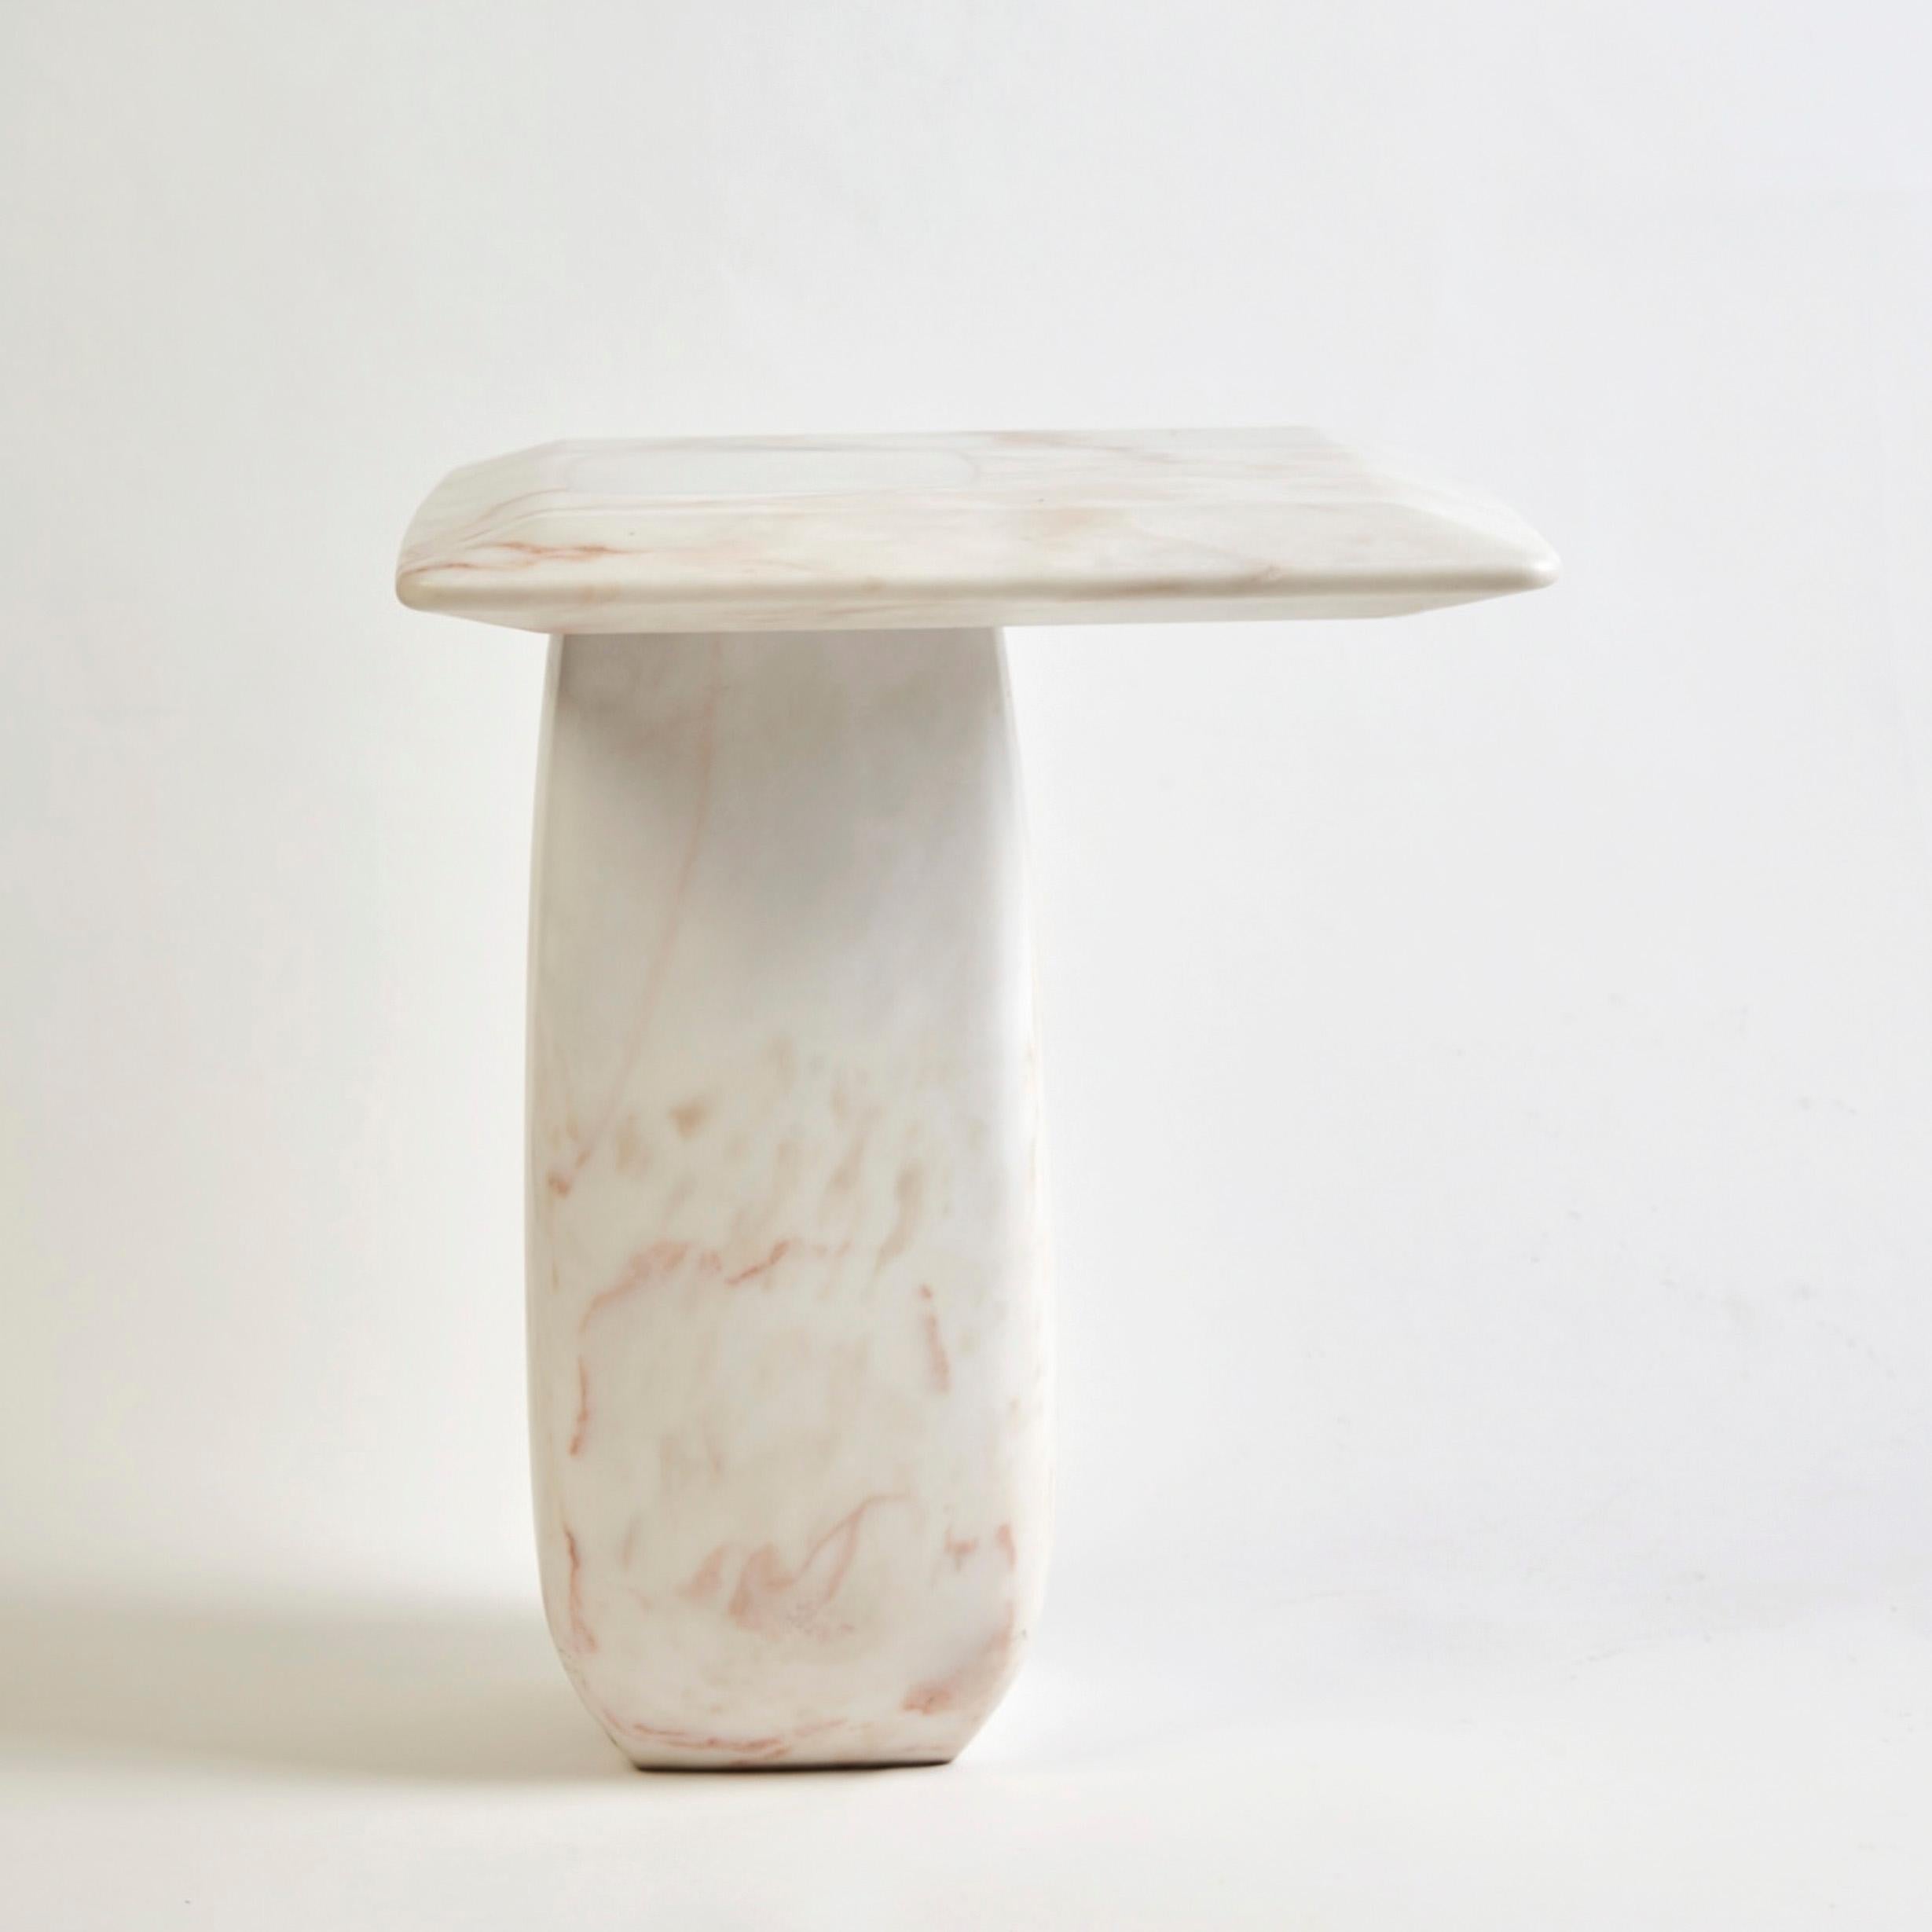 Table d'appoint Bossa en marbre Estremoz, fabriquée à la main au Portugal par Duistt

La collection 